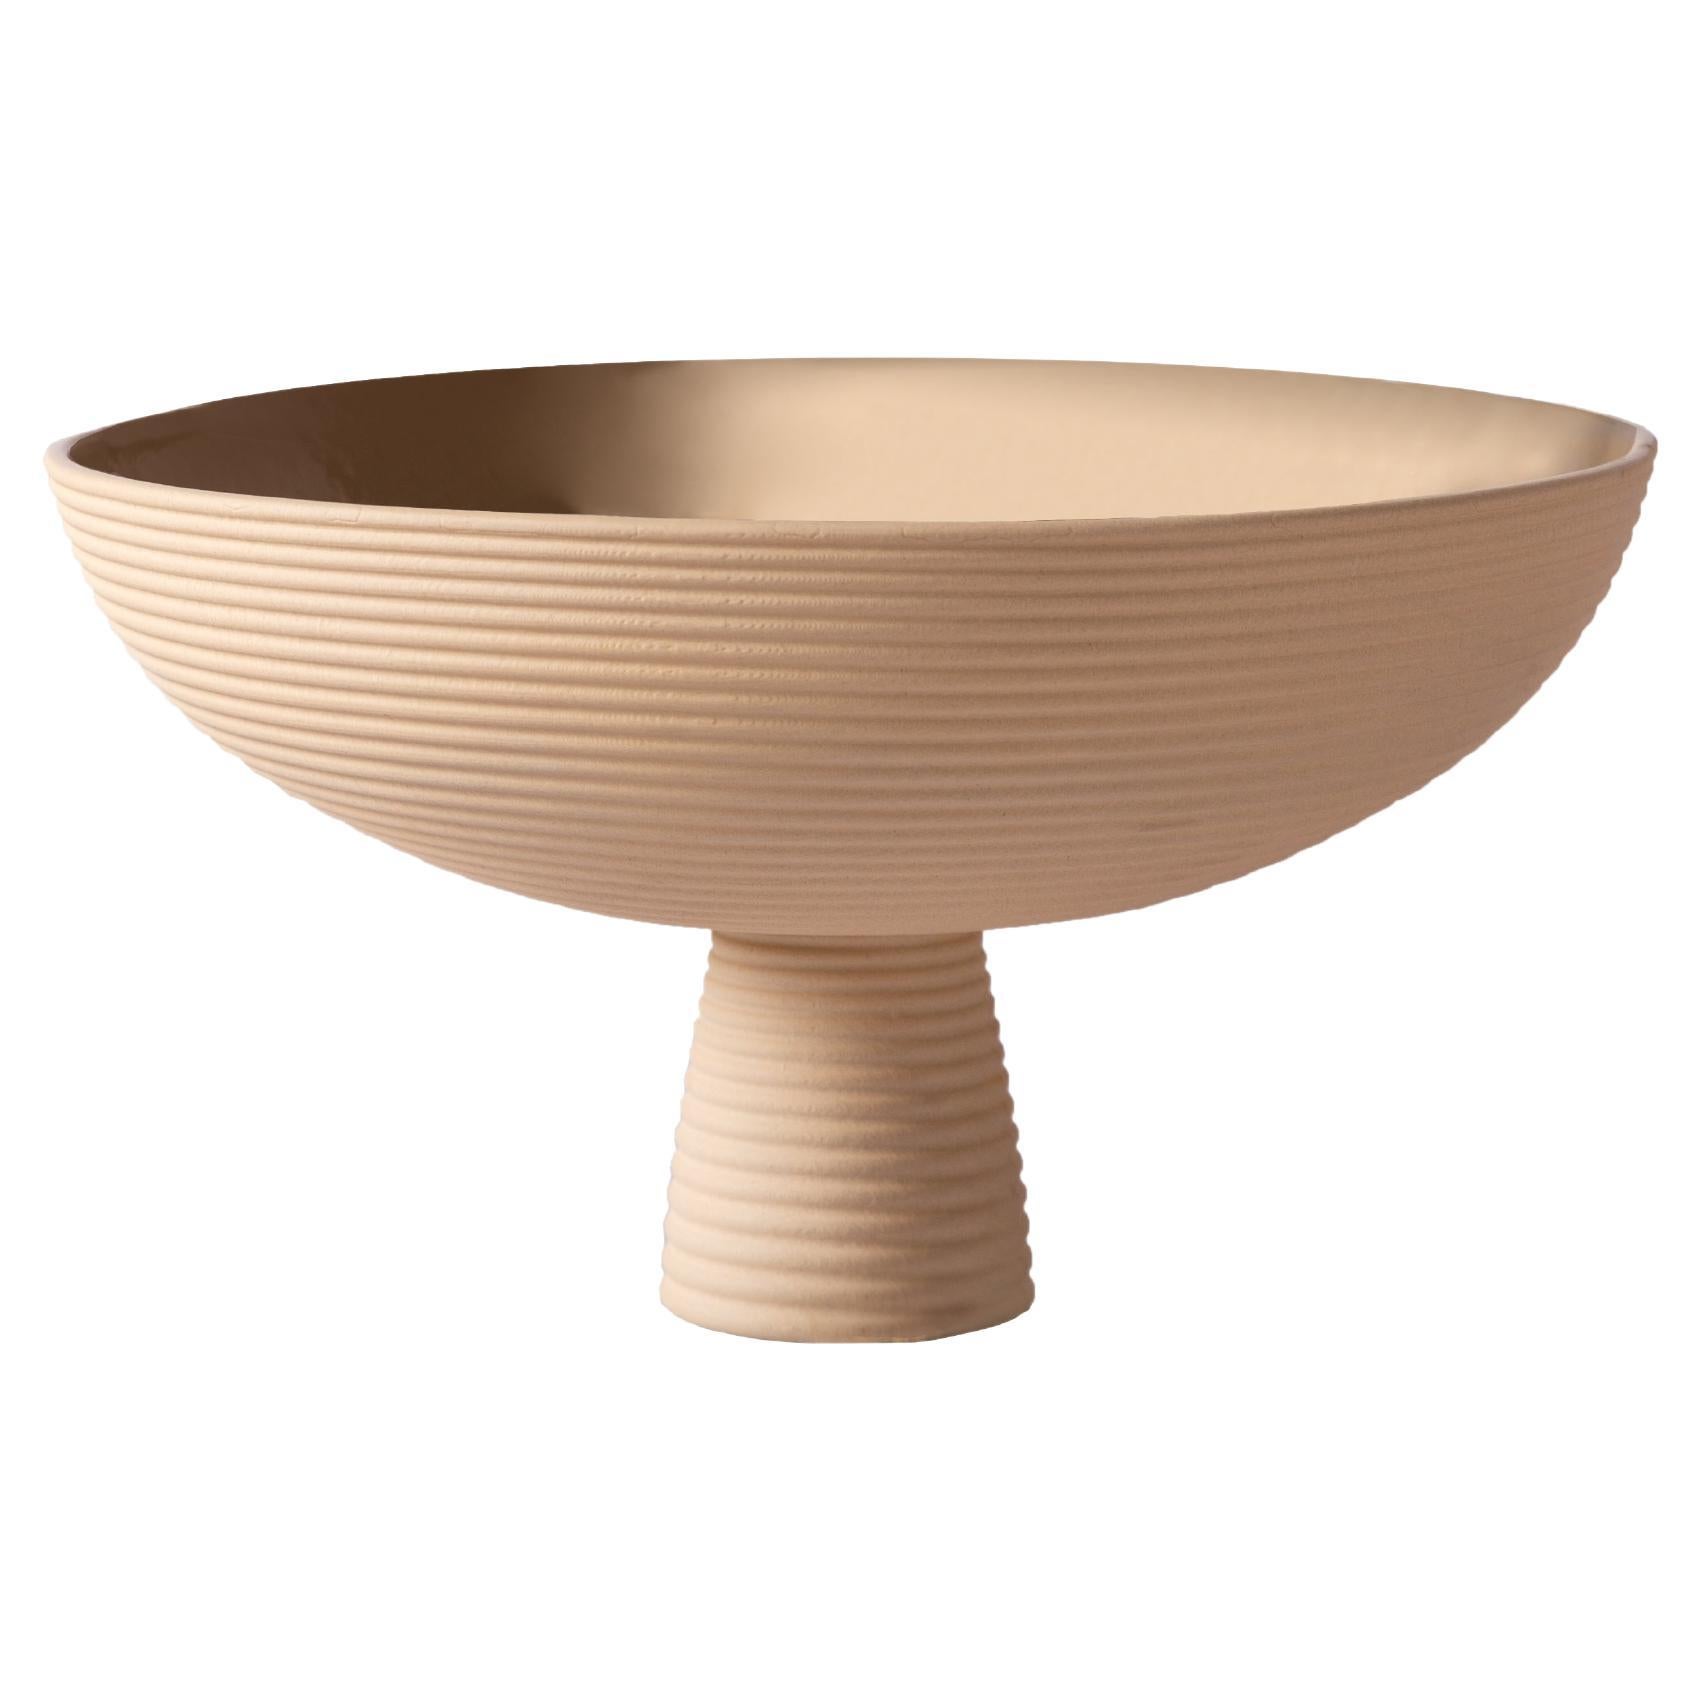 Schneid Studio Dais Ceramic Bowl, Sand